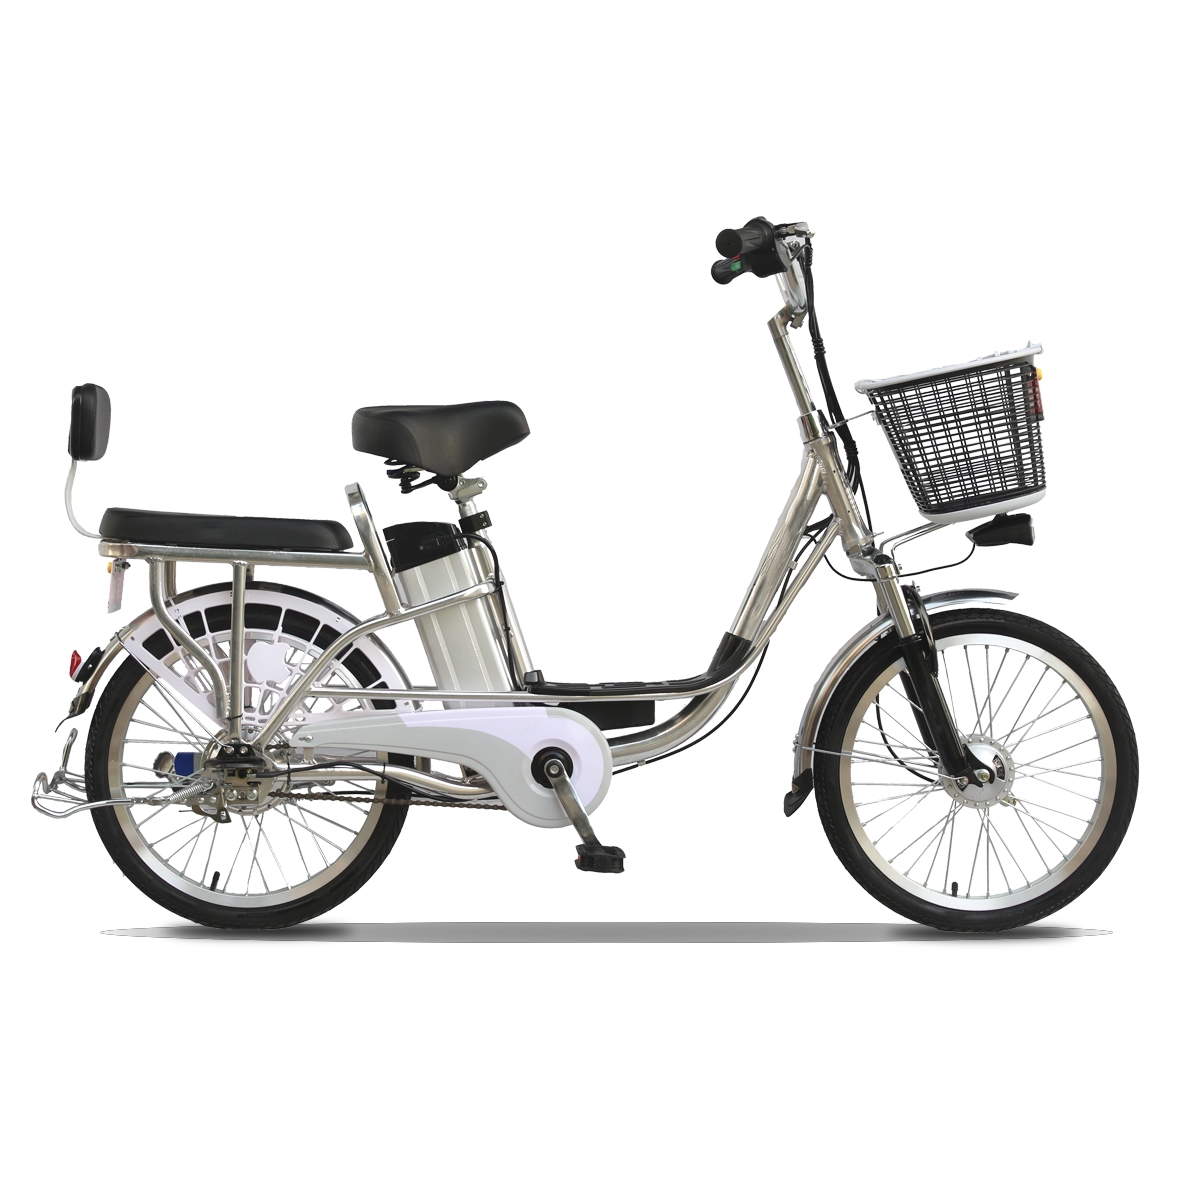 Ηλεκτρικά ποδήλατα 350w Κύκλος παράδοσης φαγητού Cargo City Road E Bikes Ebike Bicycles